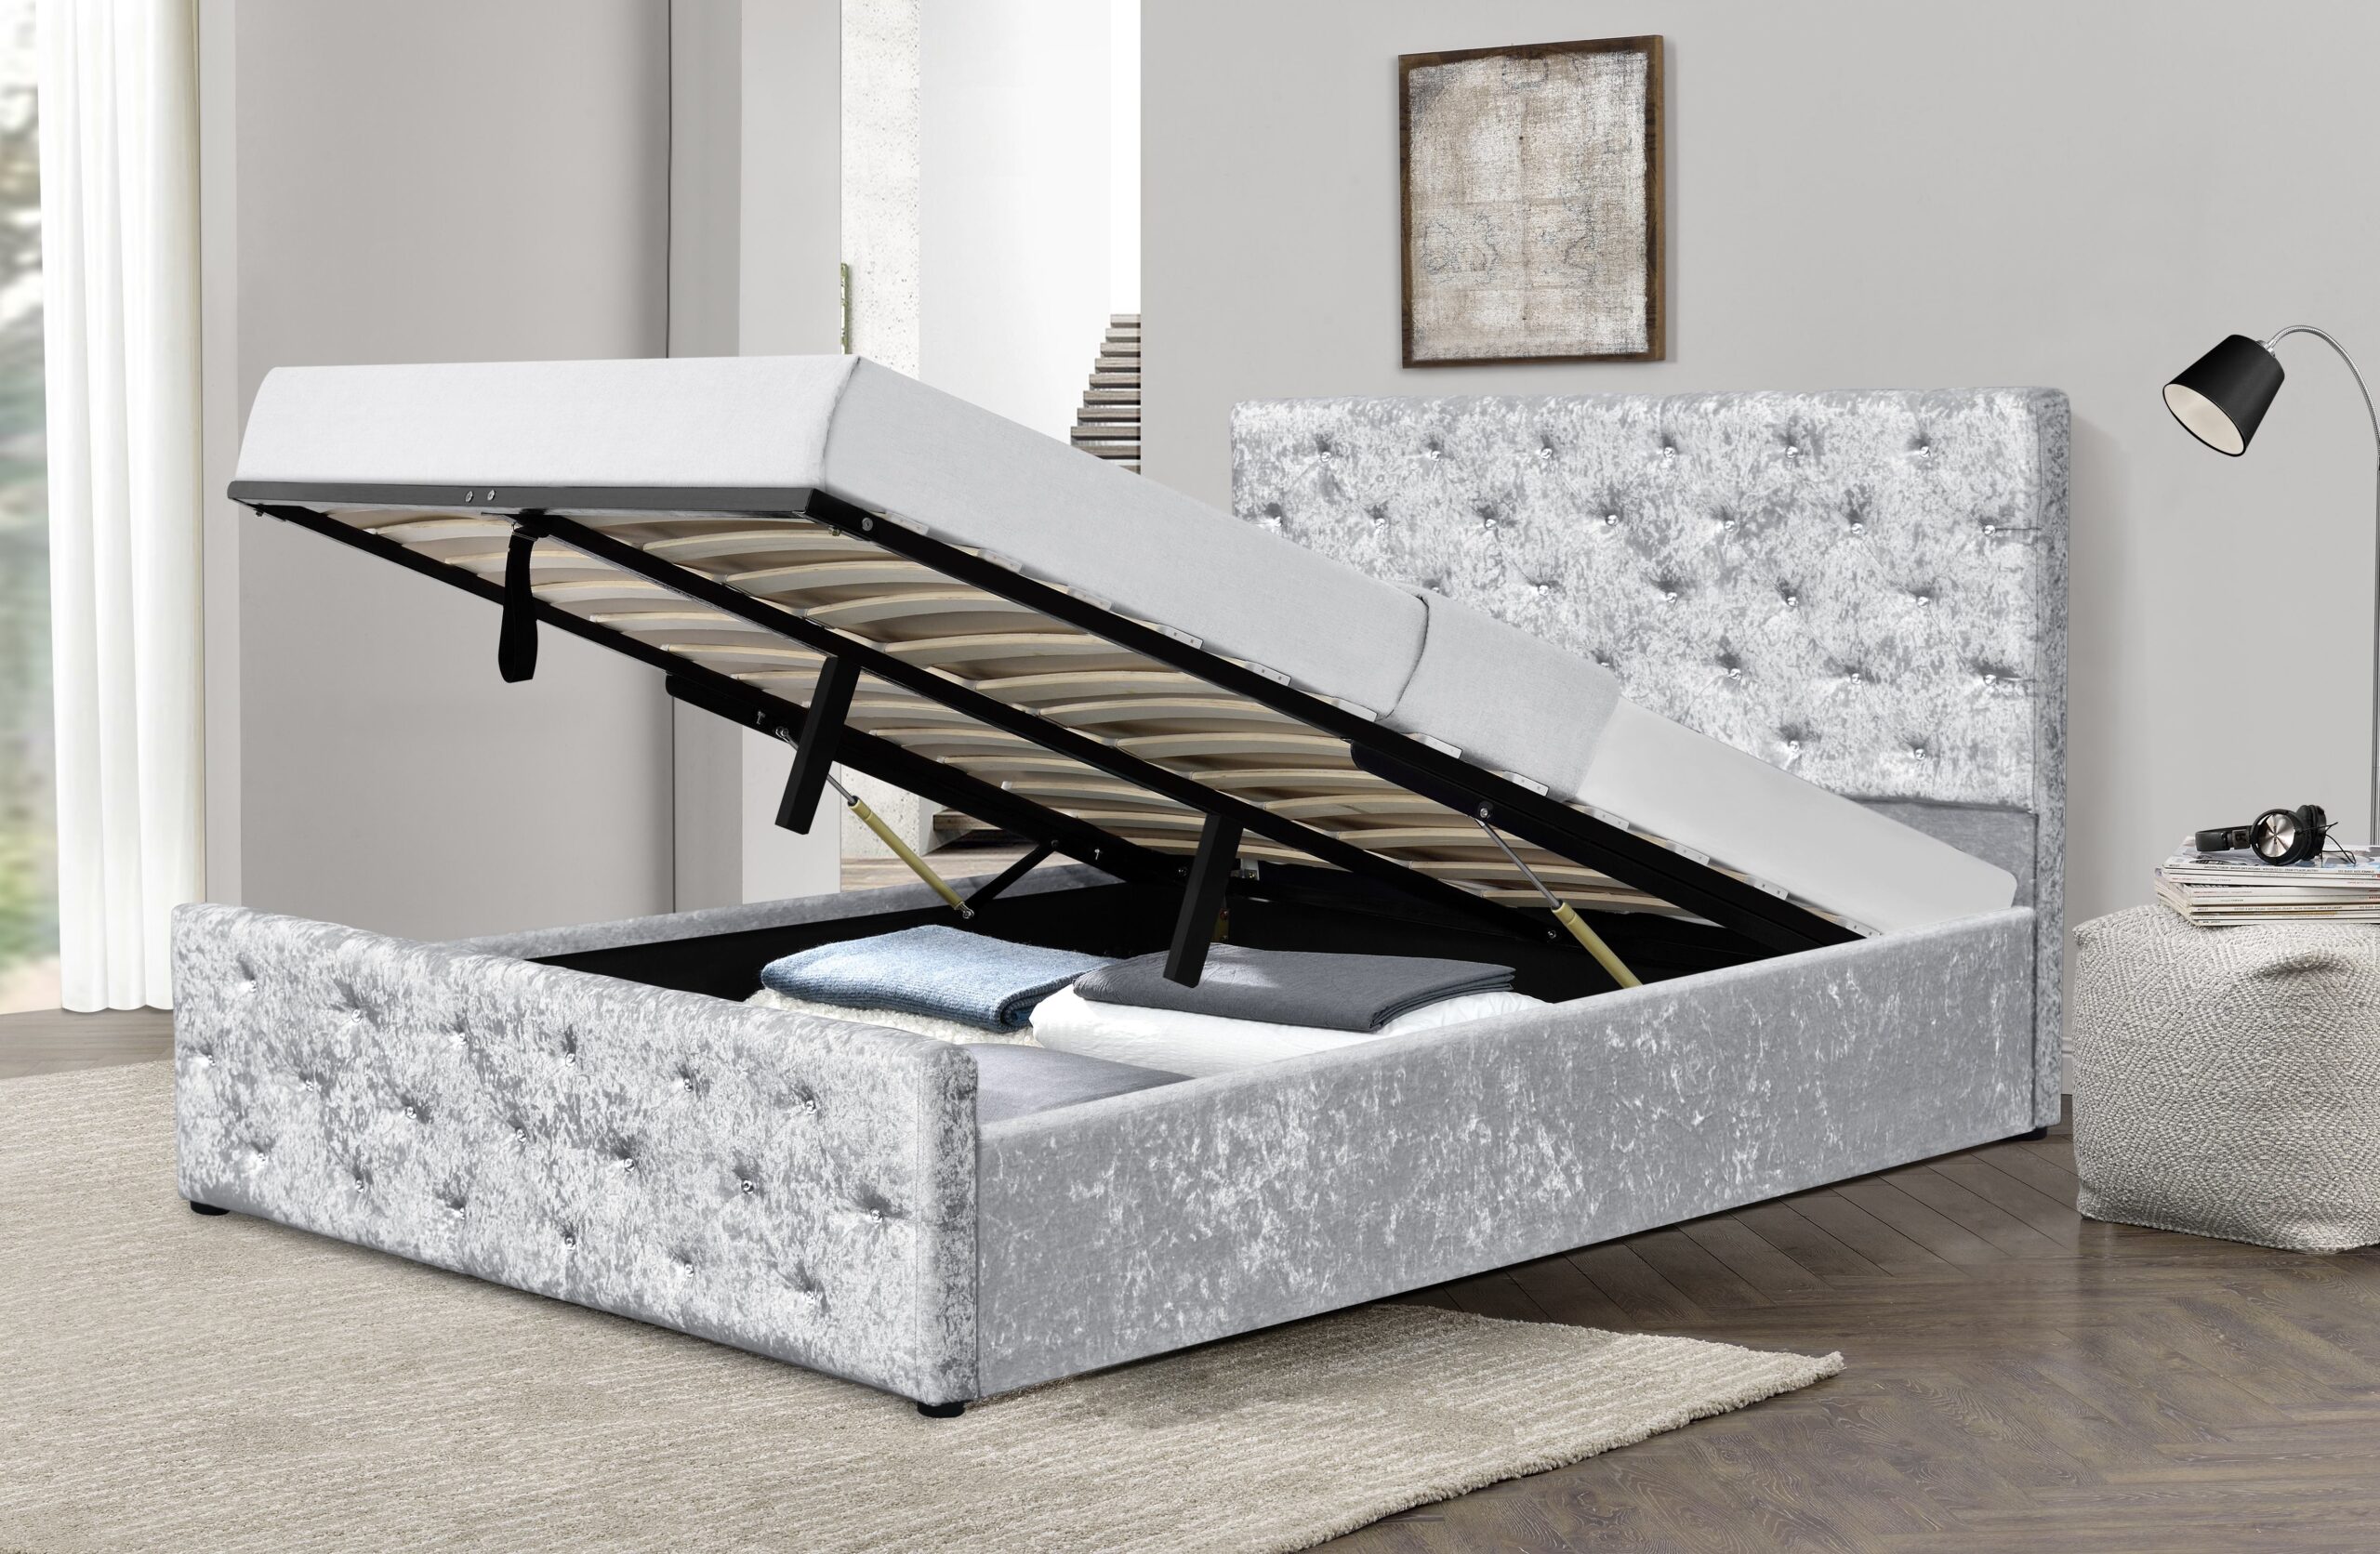 mattress for castro ottoman bed